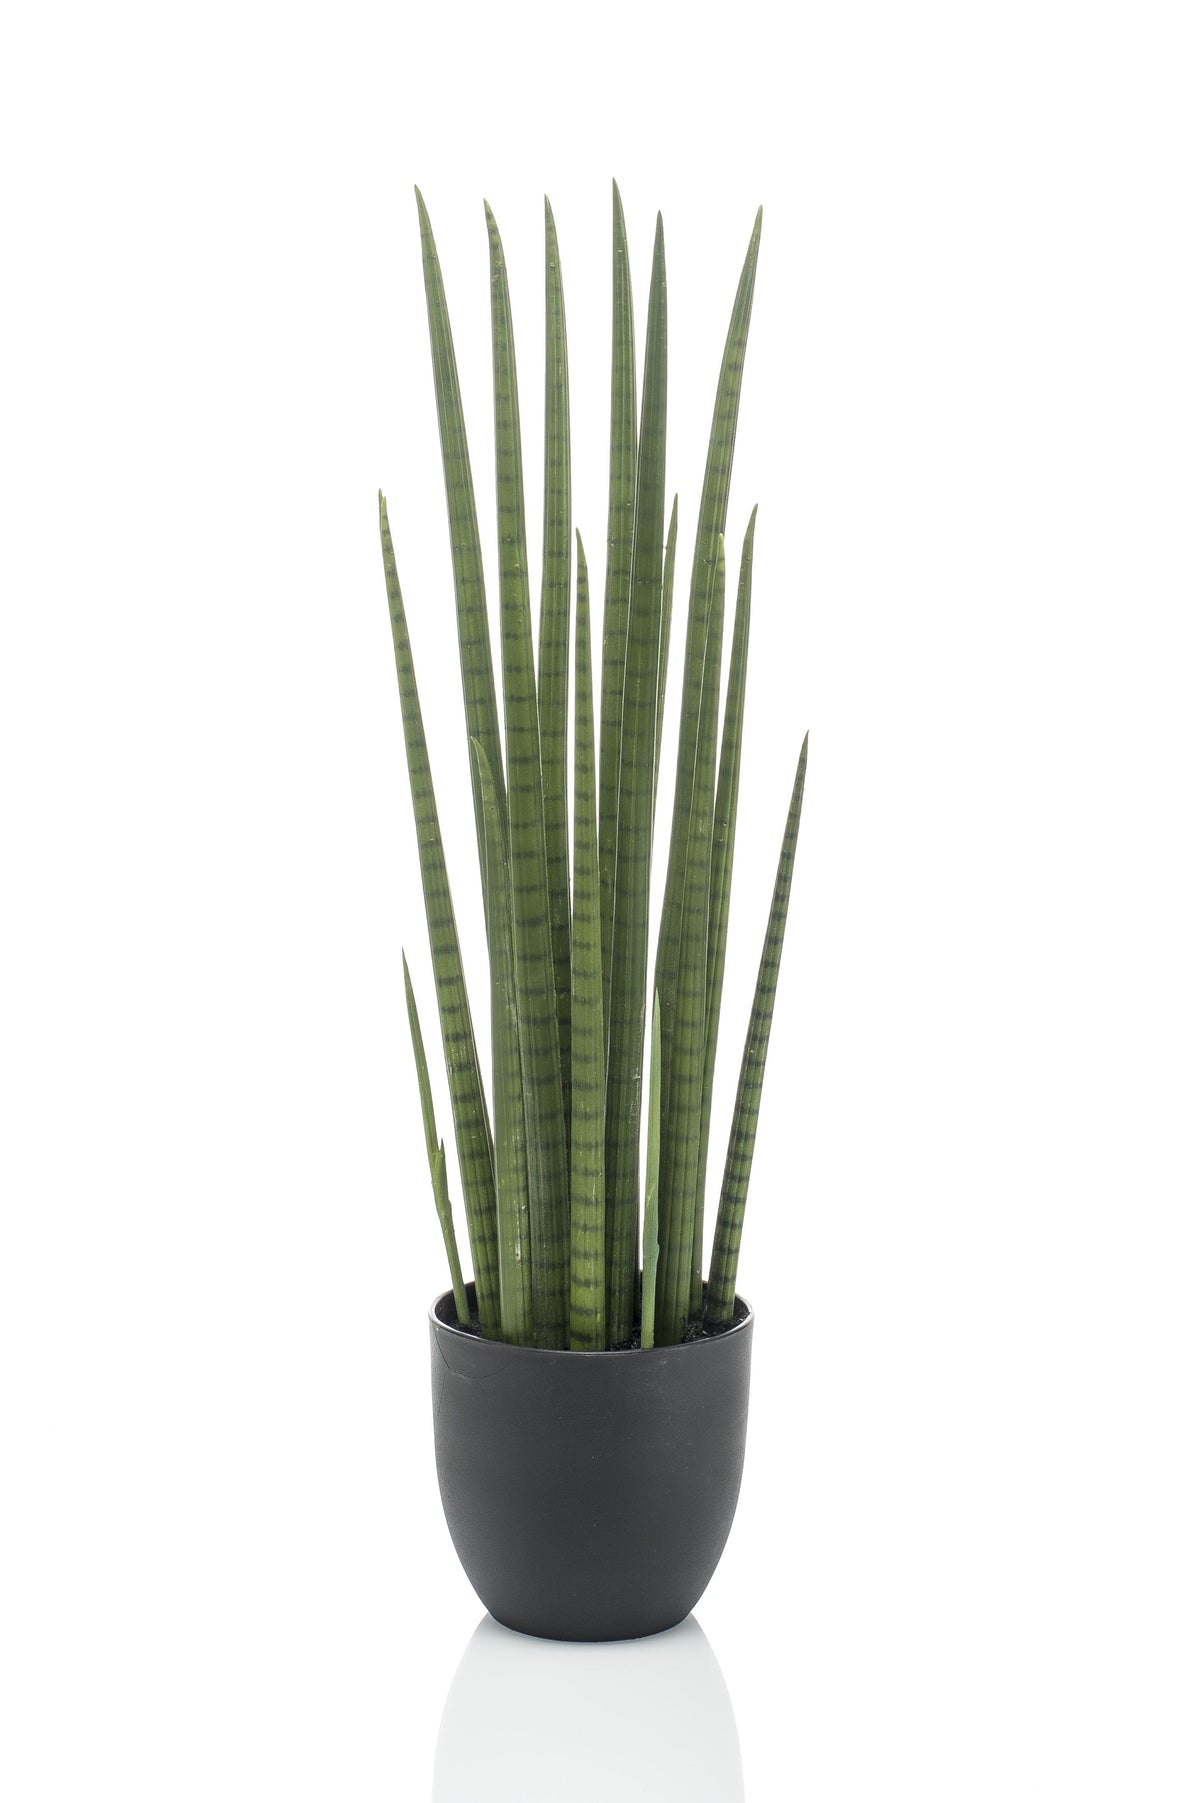 Sansevieria Cylindrica - Frauenzunge - 70 cm - kunstpflanze